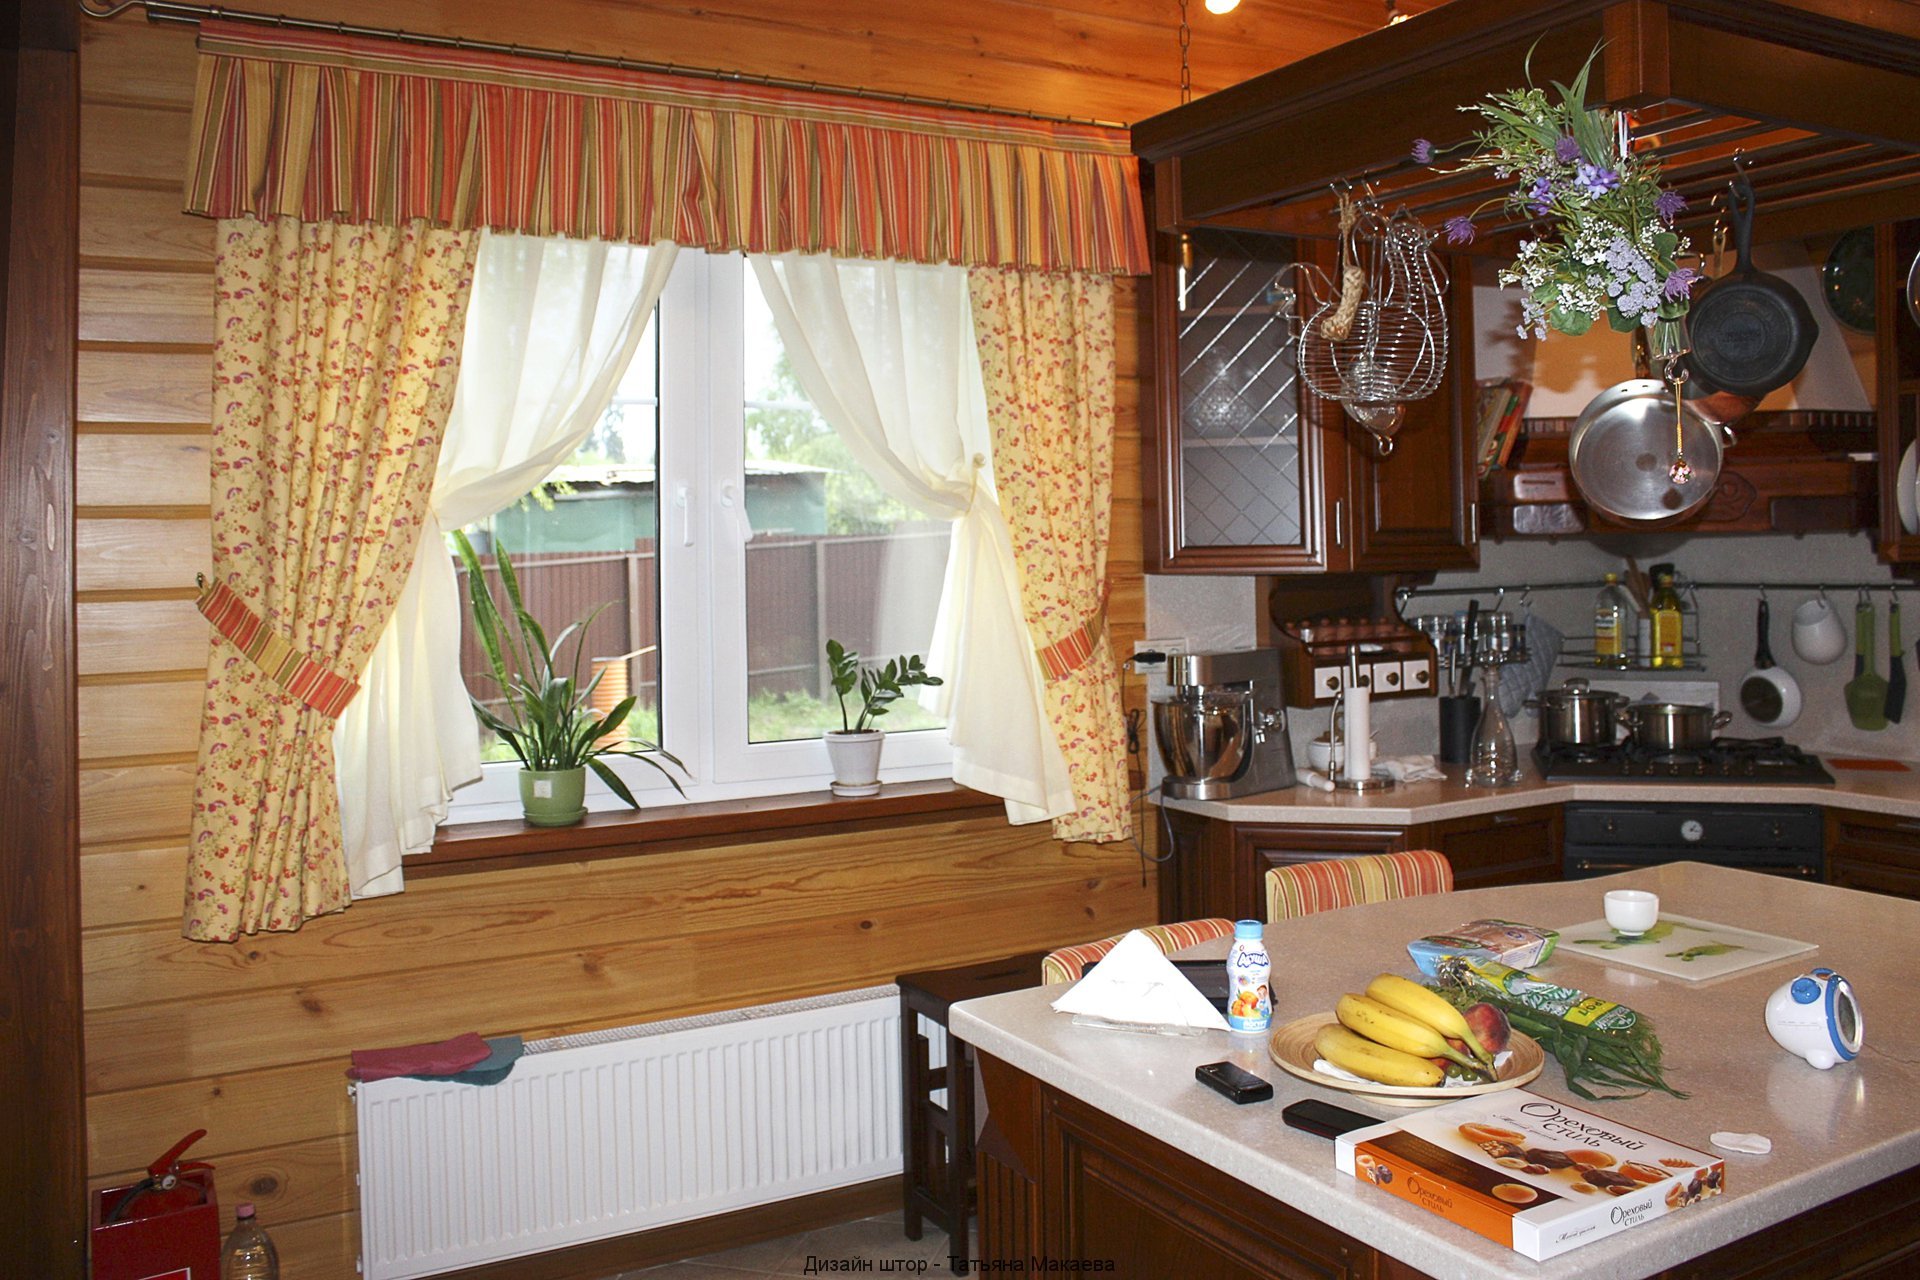 Оформление окна на кухне: шторы или жалюзи?